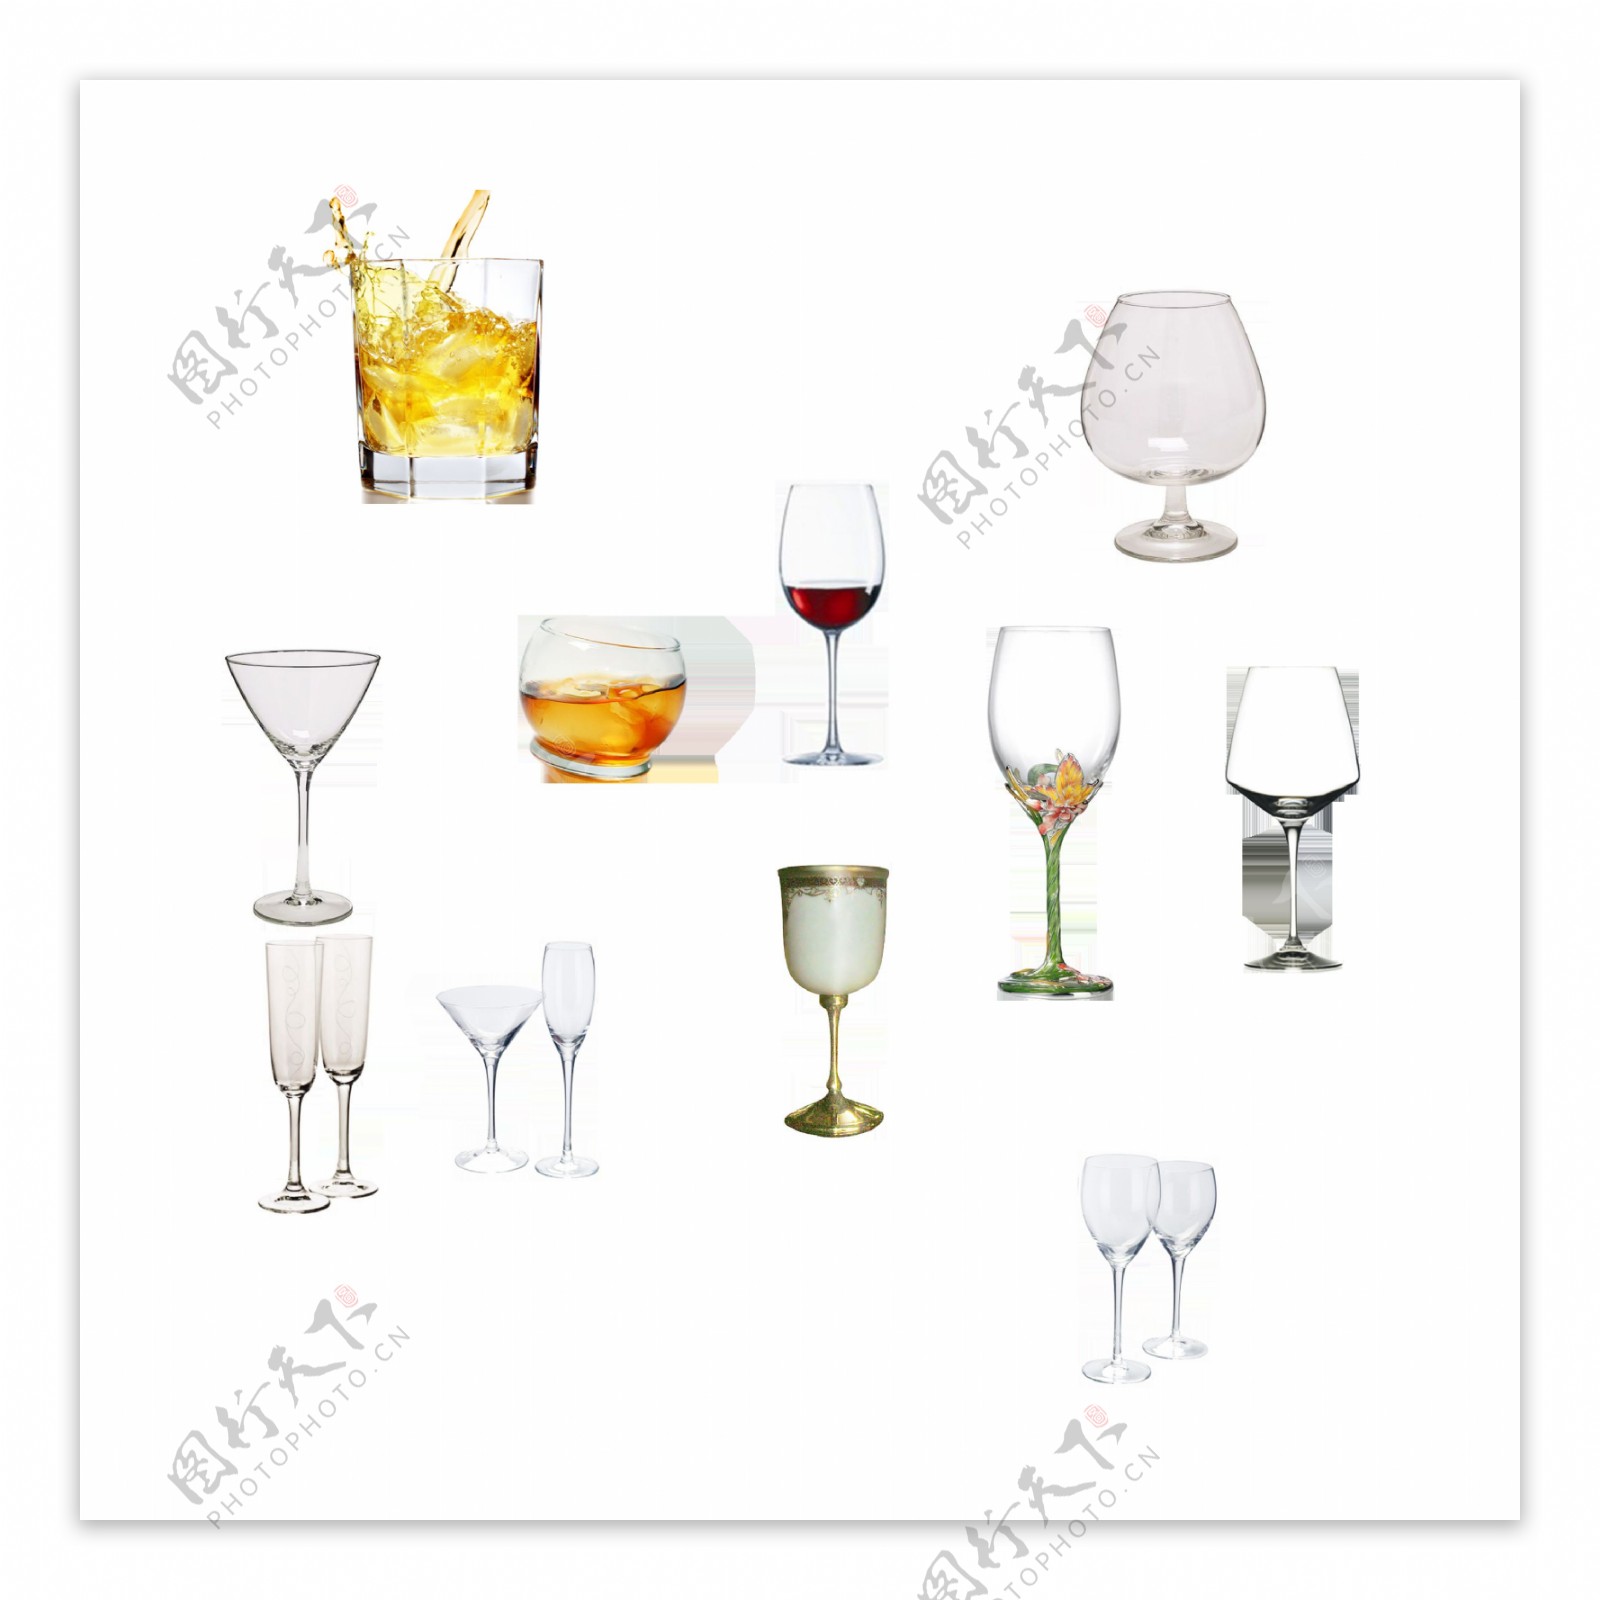 杯子酒杯各种杯子图案设计素材